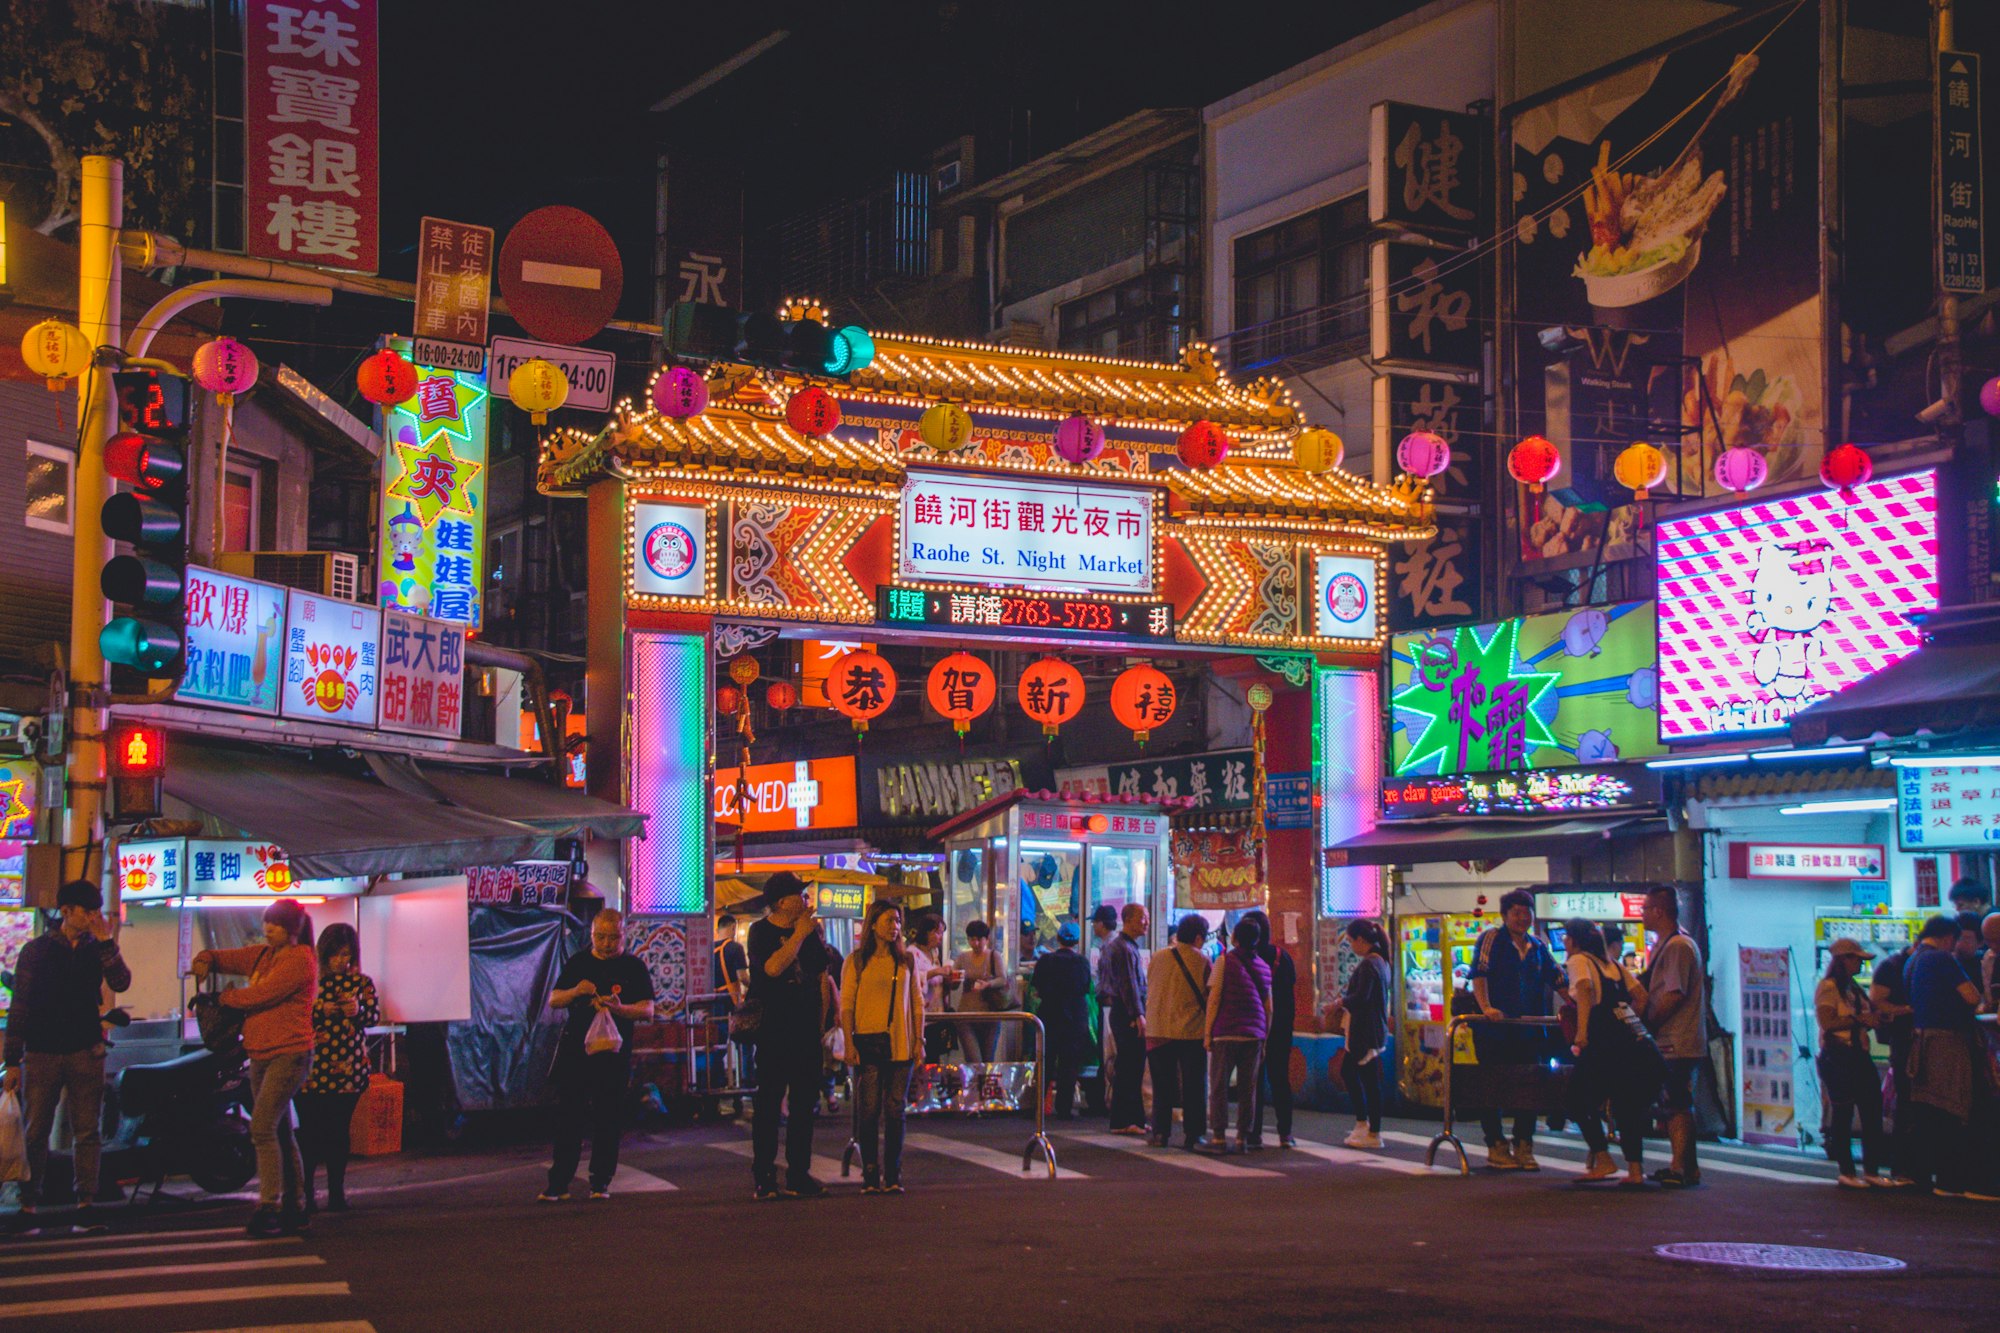 Raohe Night Market, Taipei, Taiwan, colorful neonlights, Photo by Vernon Raineil Cenzon / Unsplash